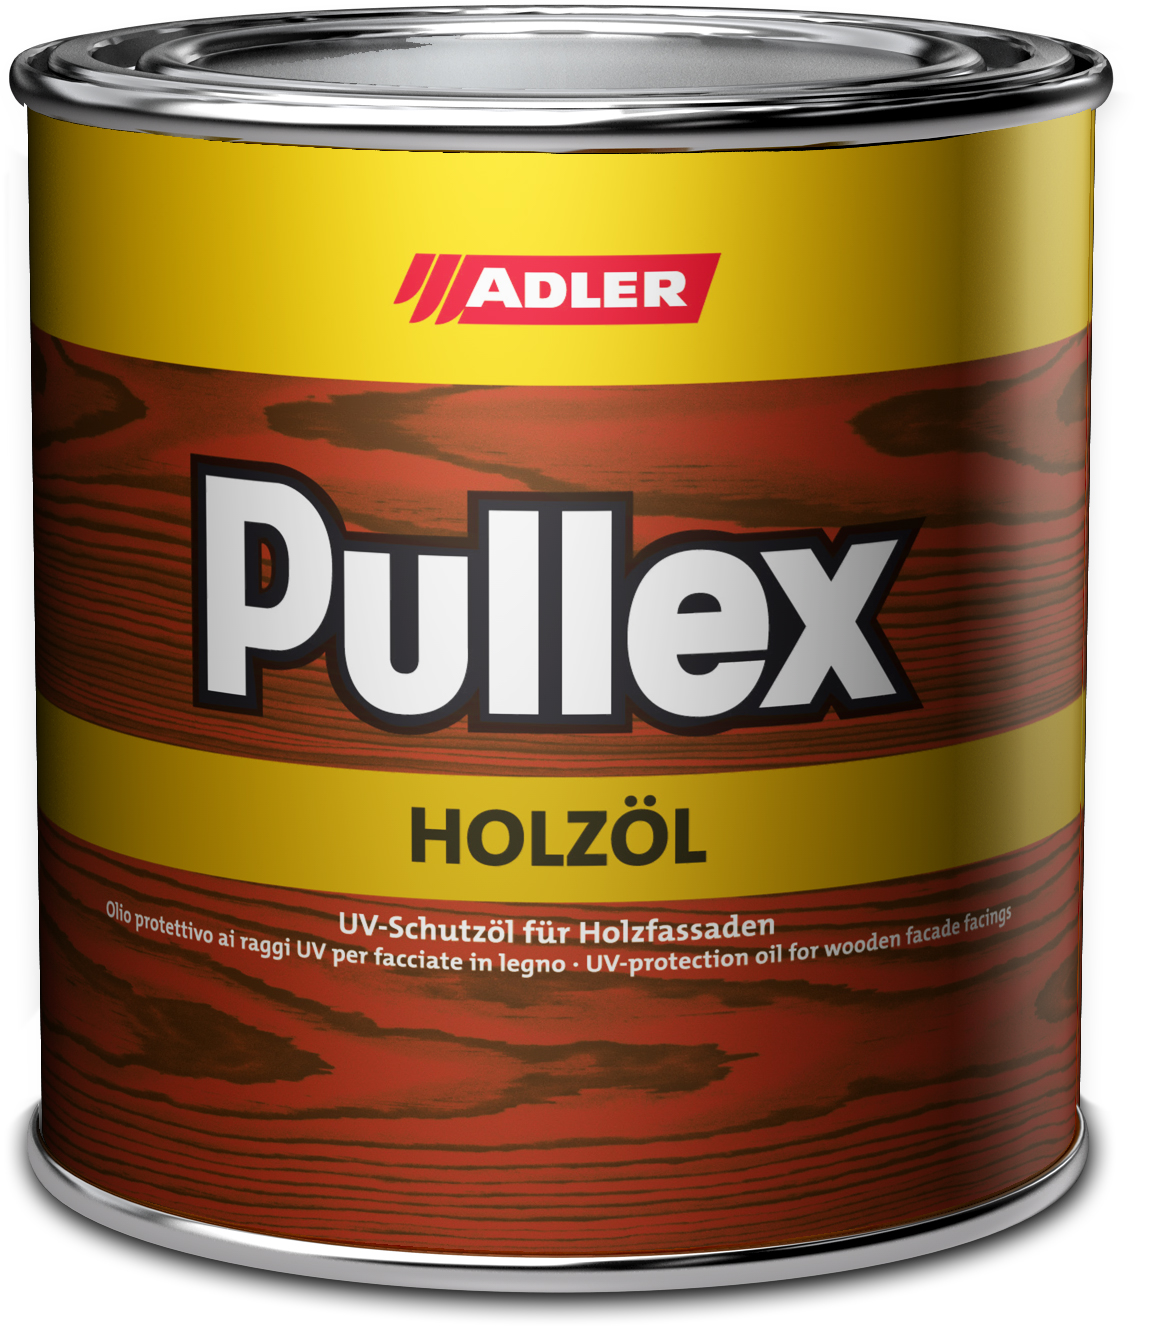 Adler Pullex Holzöl Lärche,0.75L